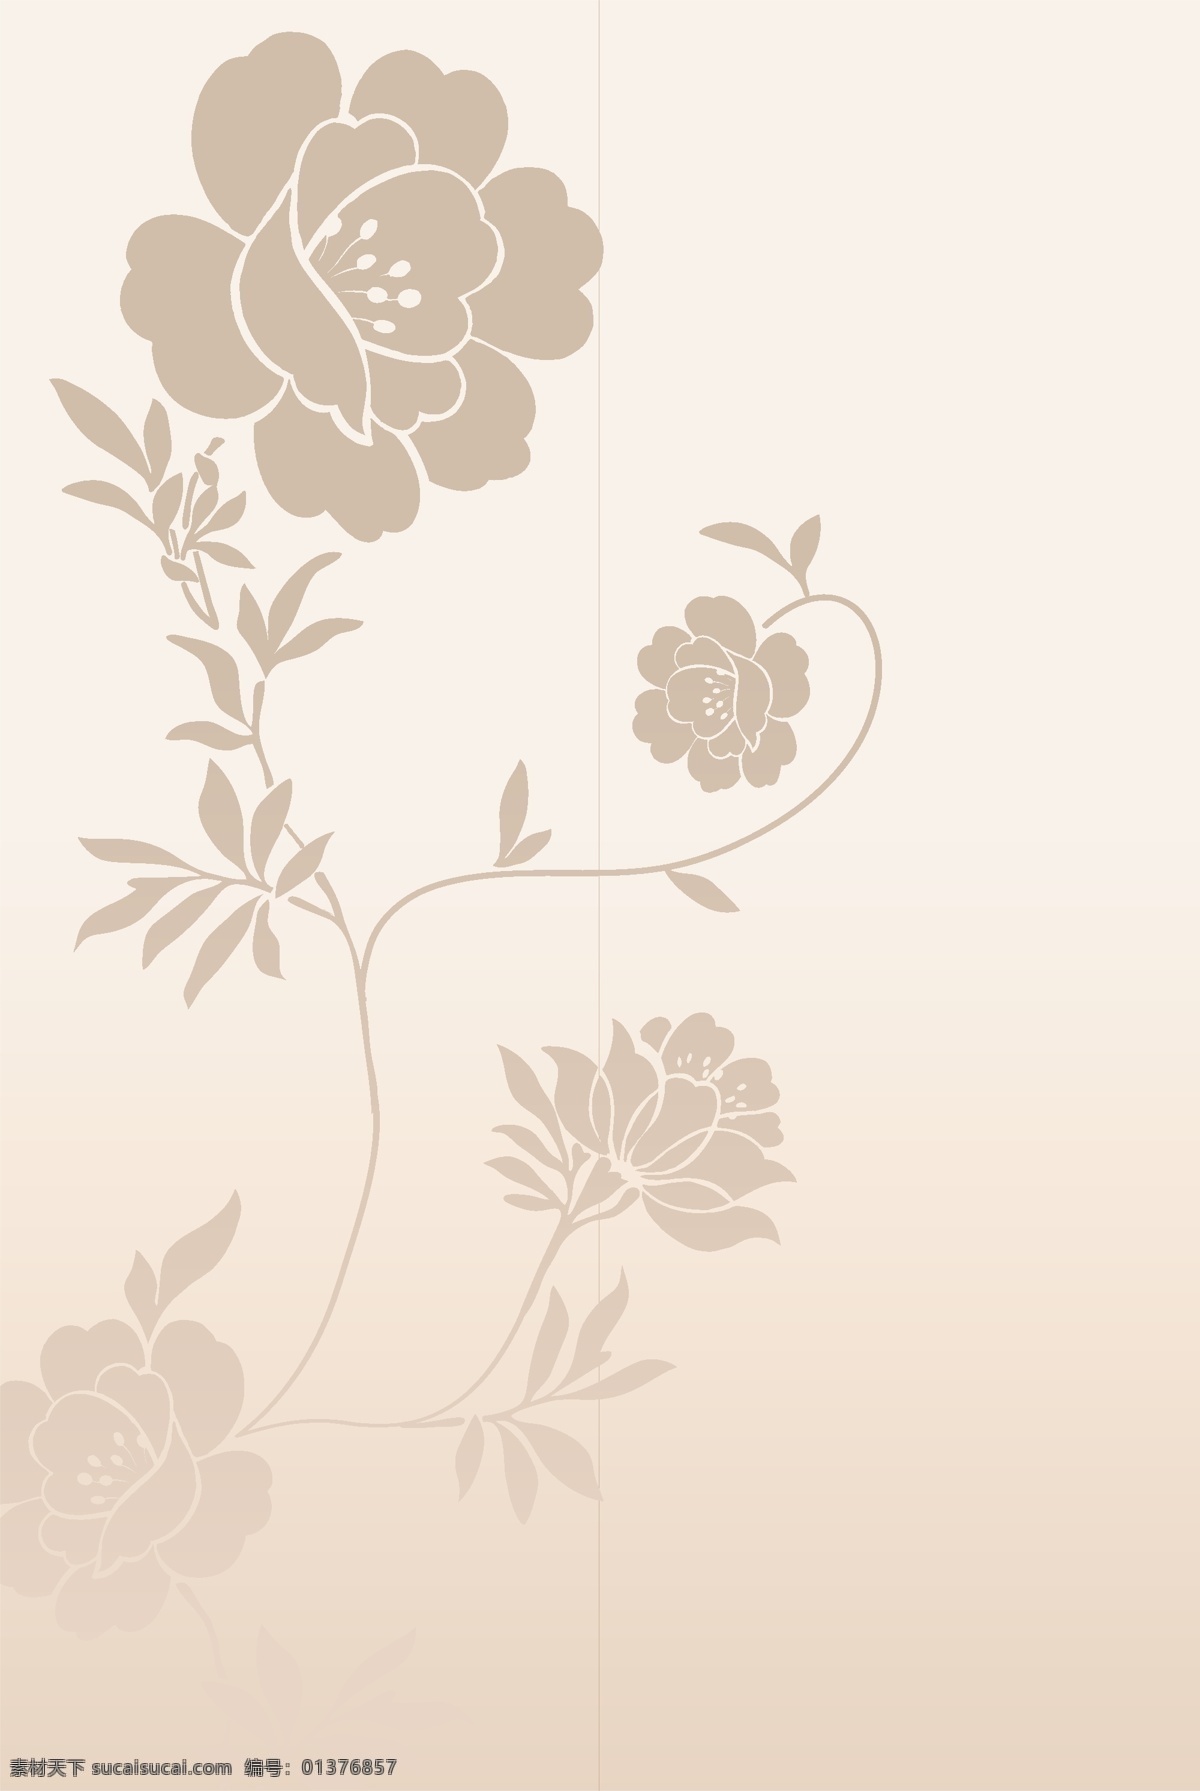 精选 花朵 背景 花纹 玫瑰花 模板 设计稿 素材元素 藤蔓 叶子 源文件 矢量图